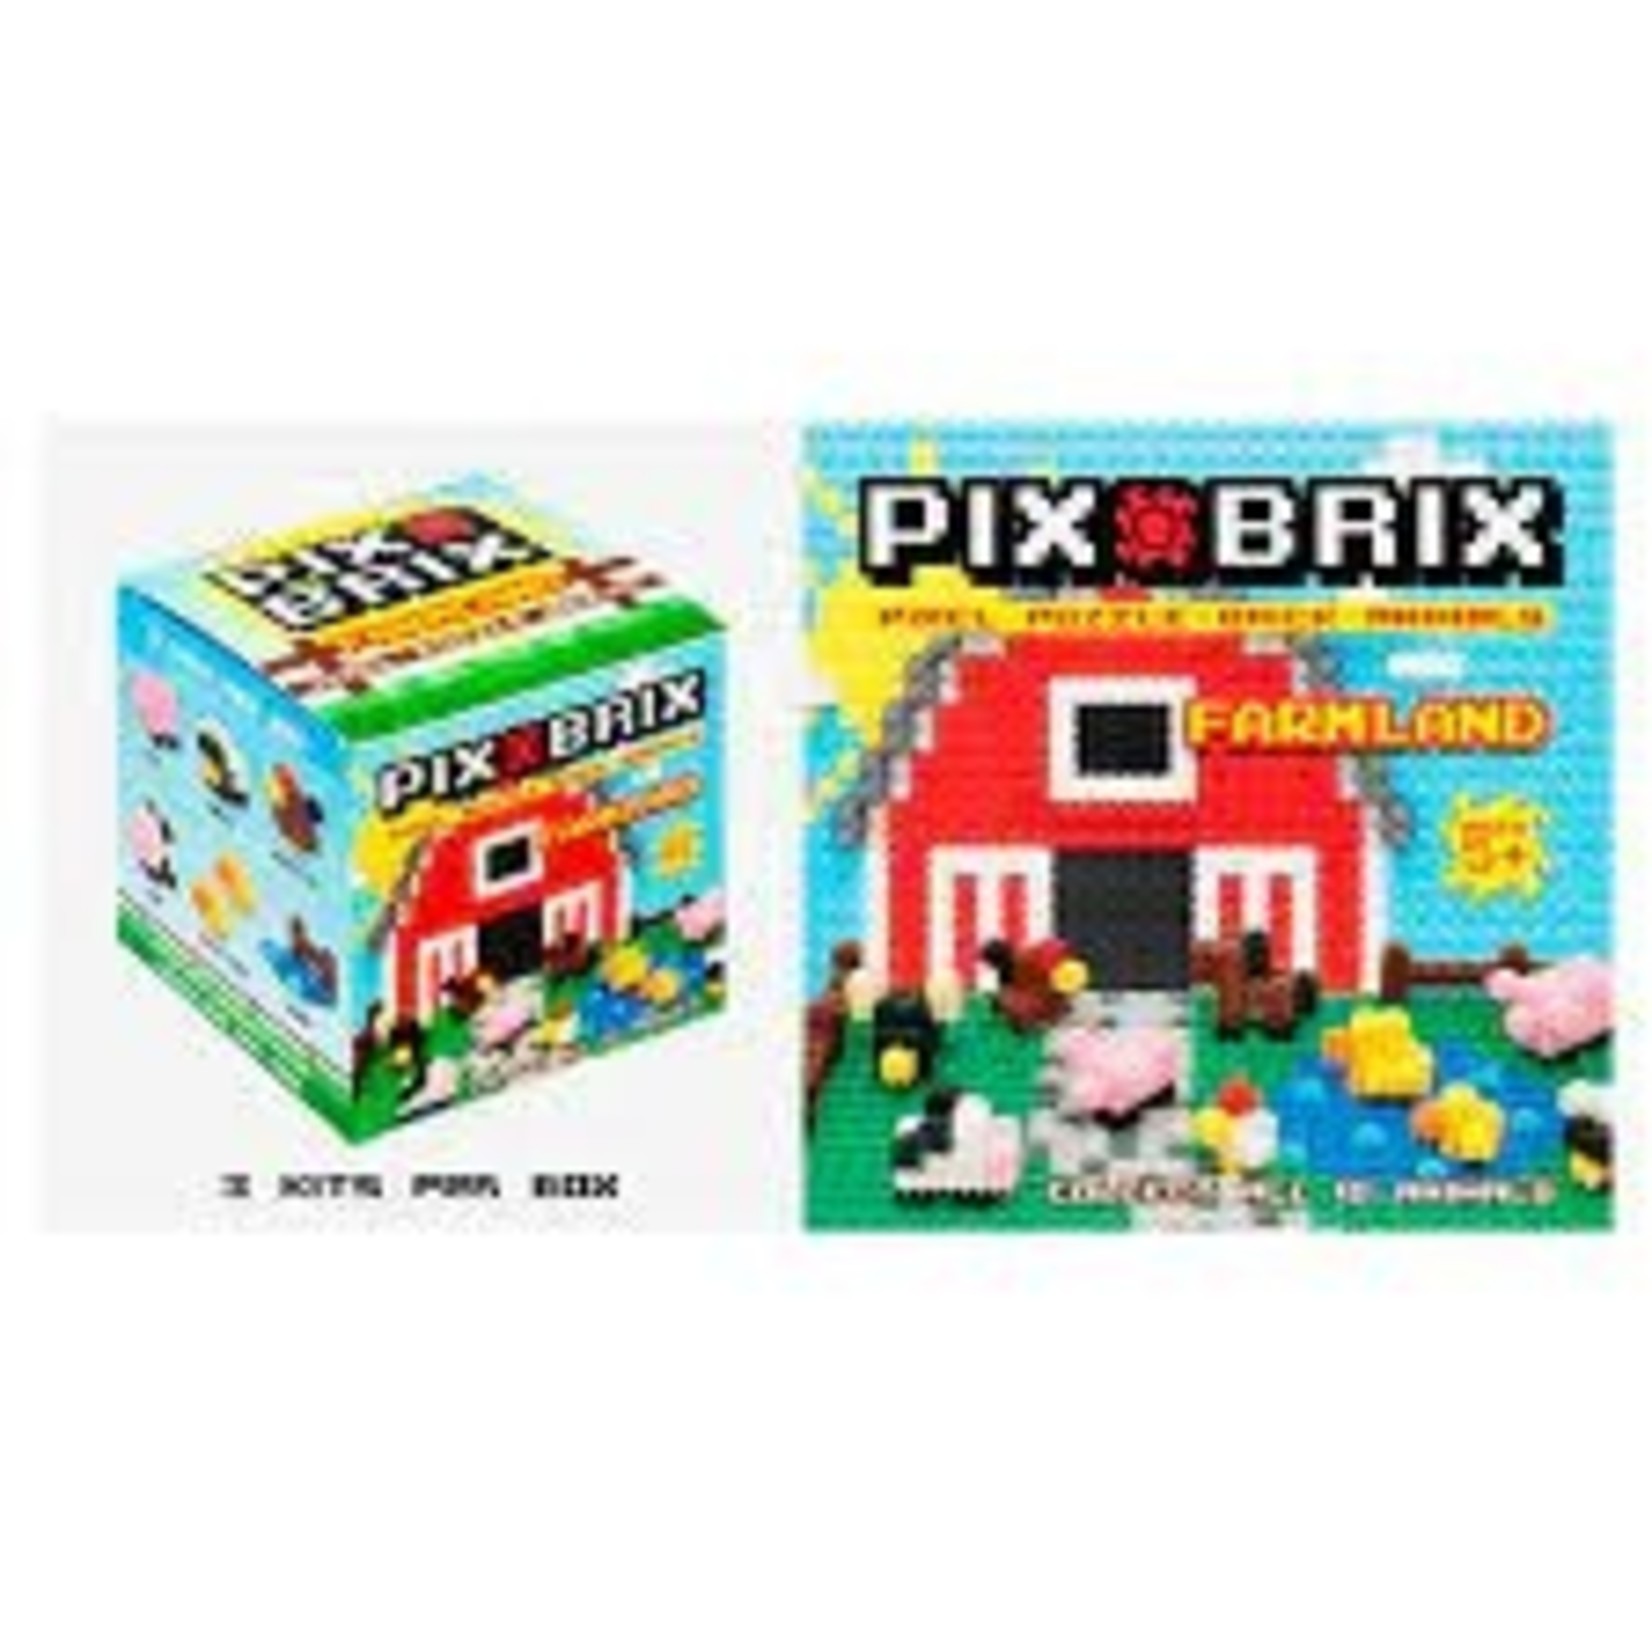 Pix Brix Pix Brix Farmland Mystery Box